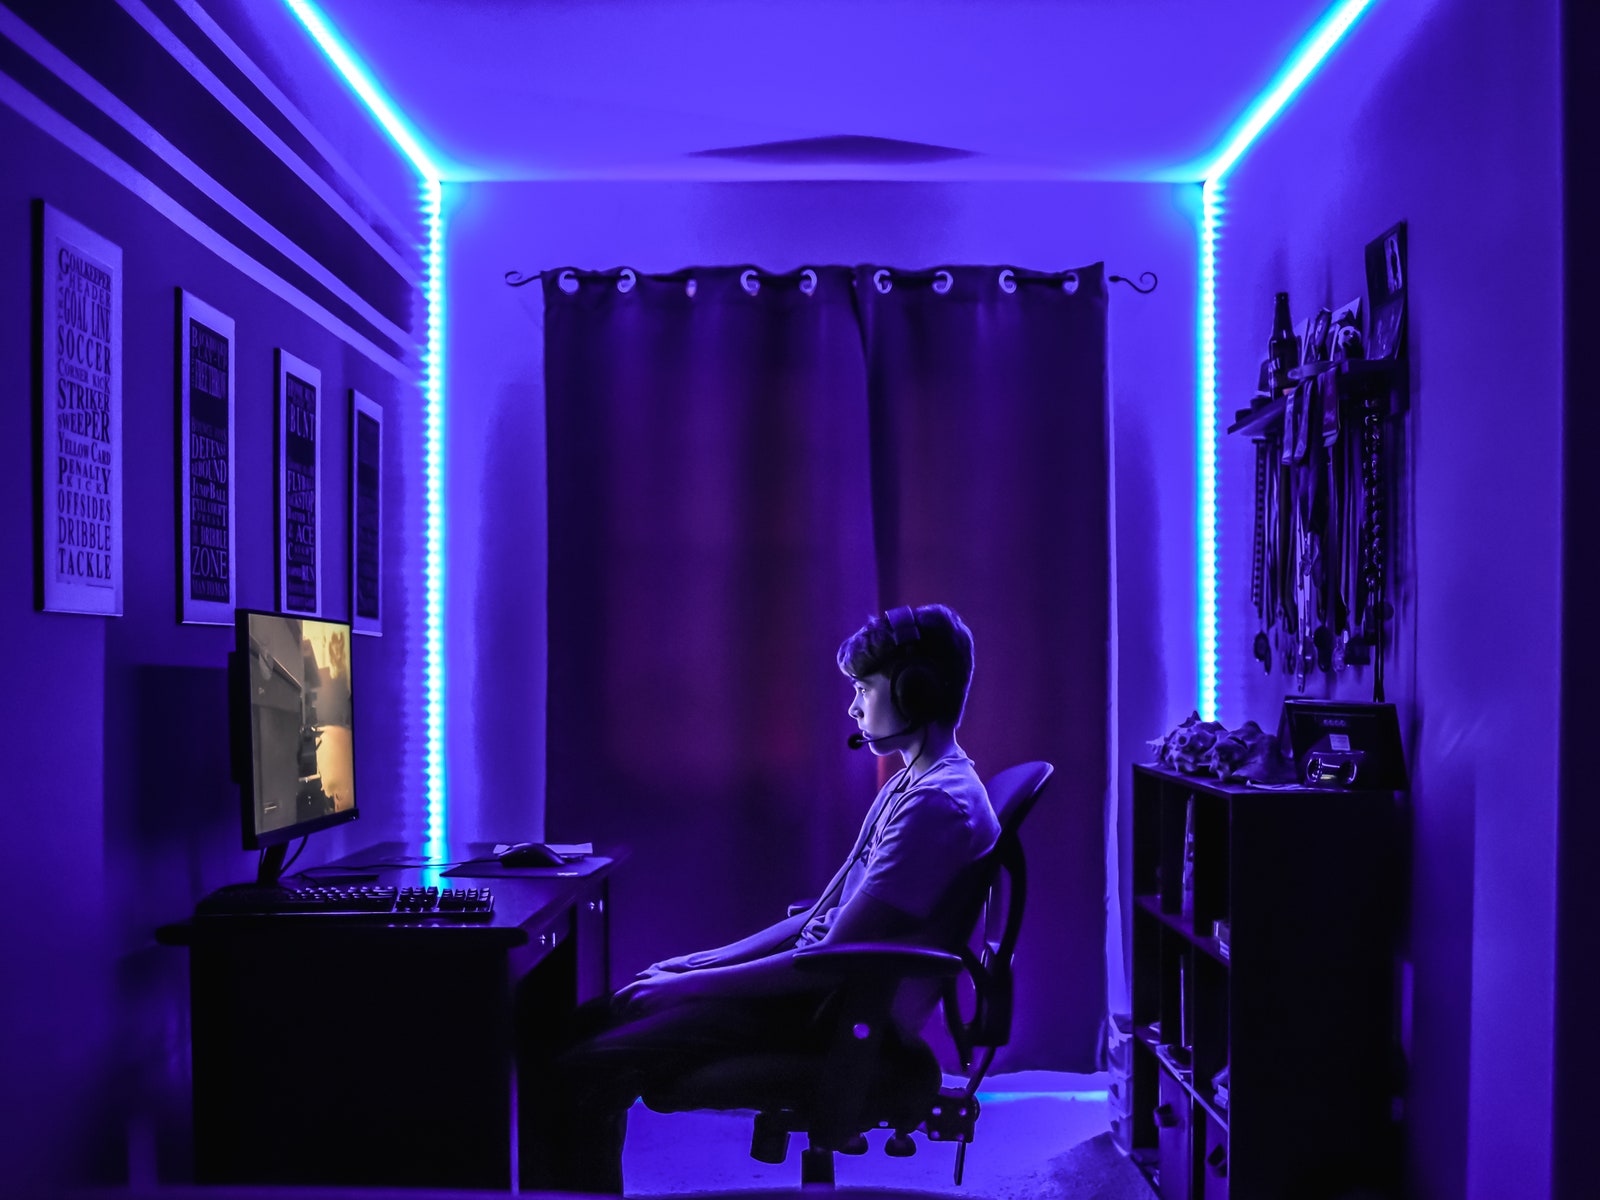 ребенок сидит за игровым компьютером